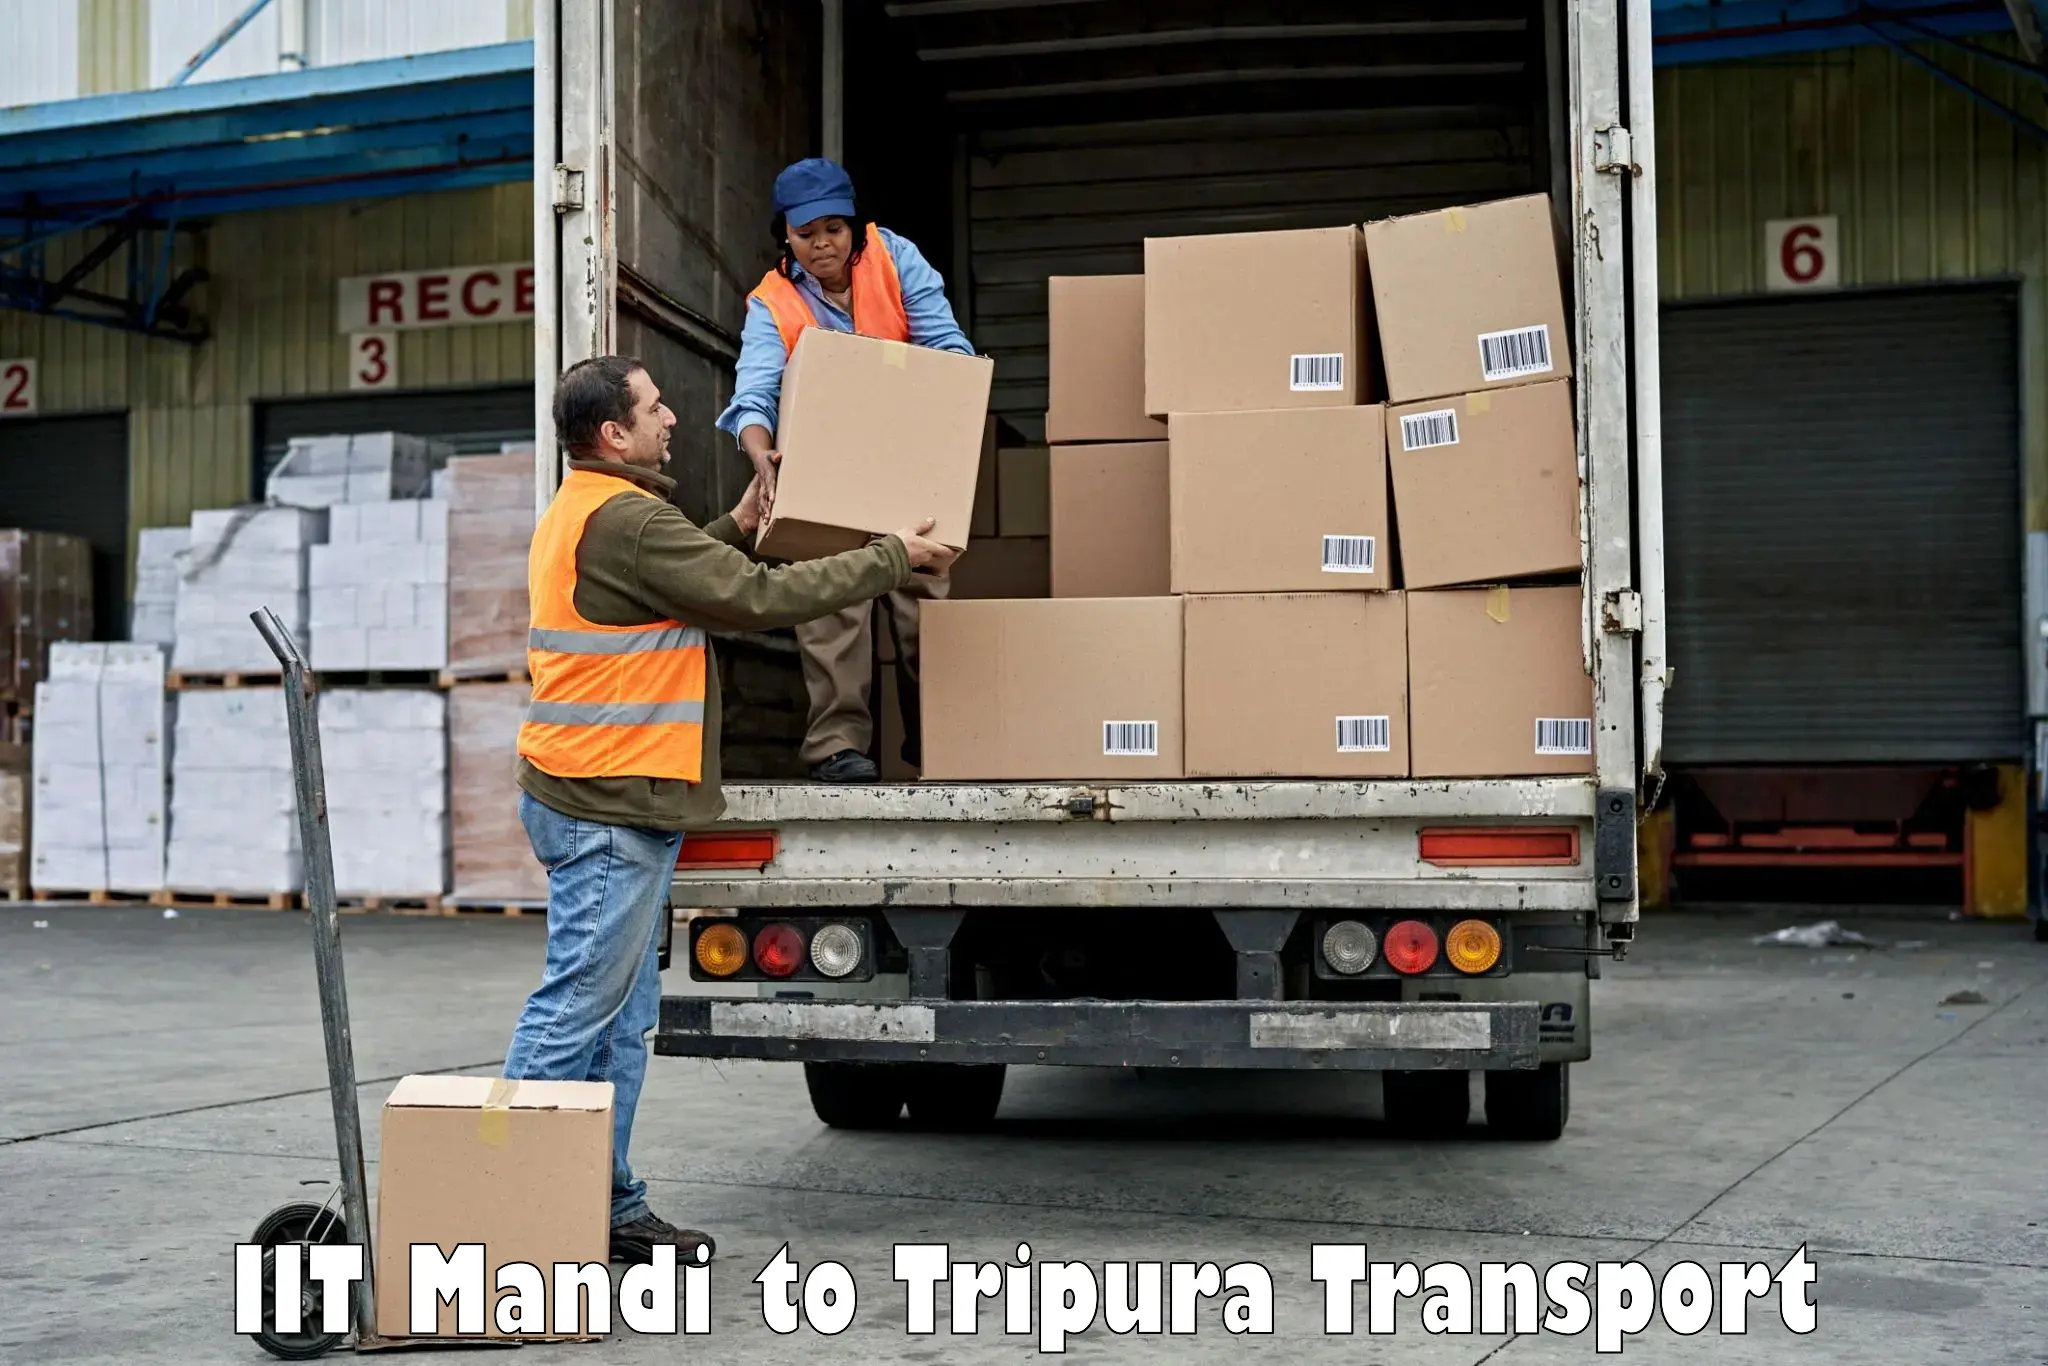 Furniture transport service in IIT Mandi to Radhakishorepur